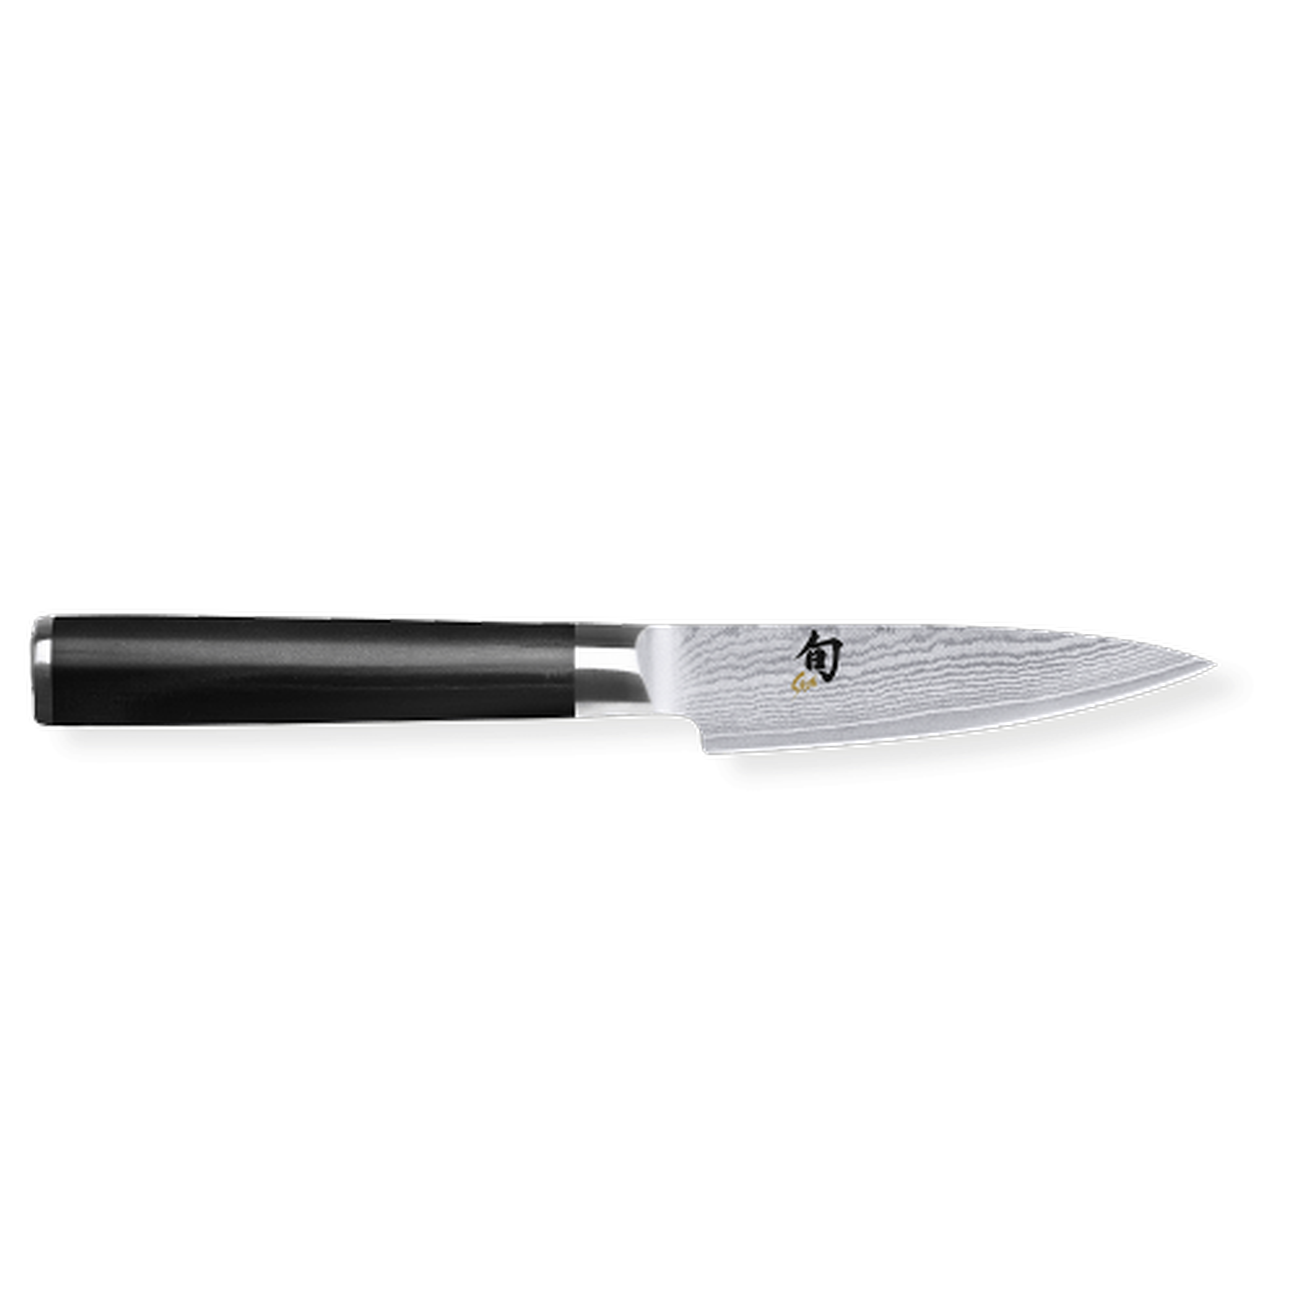 kai-shun-classic-office-knife-9cm - Kai Shun Classic Paring Knife 9cm